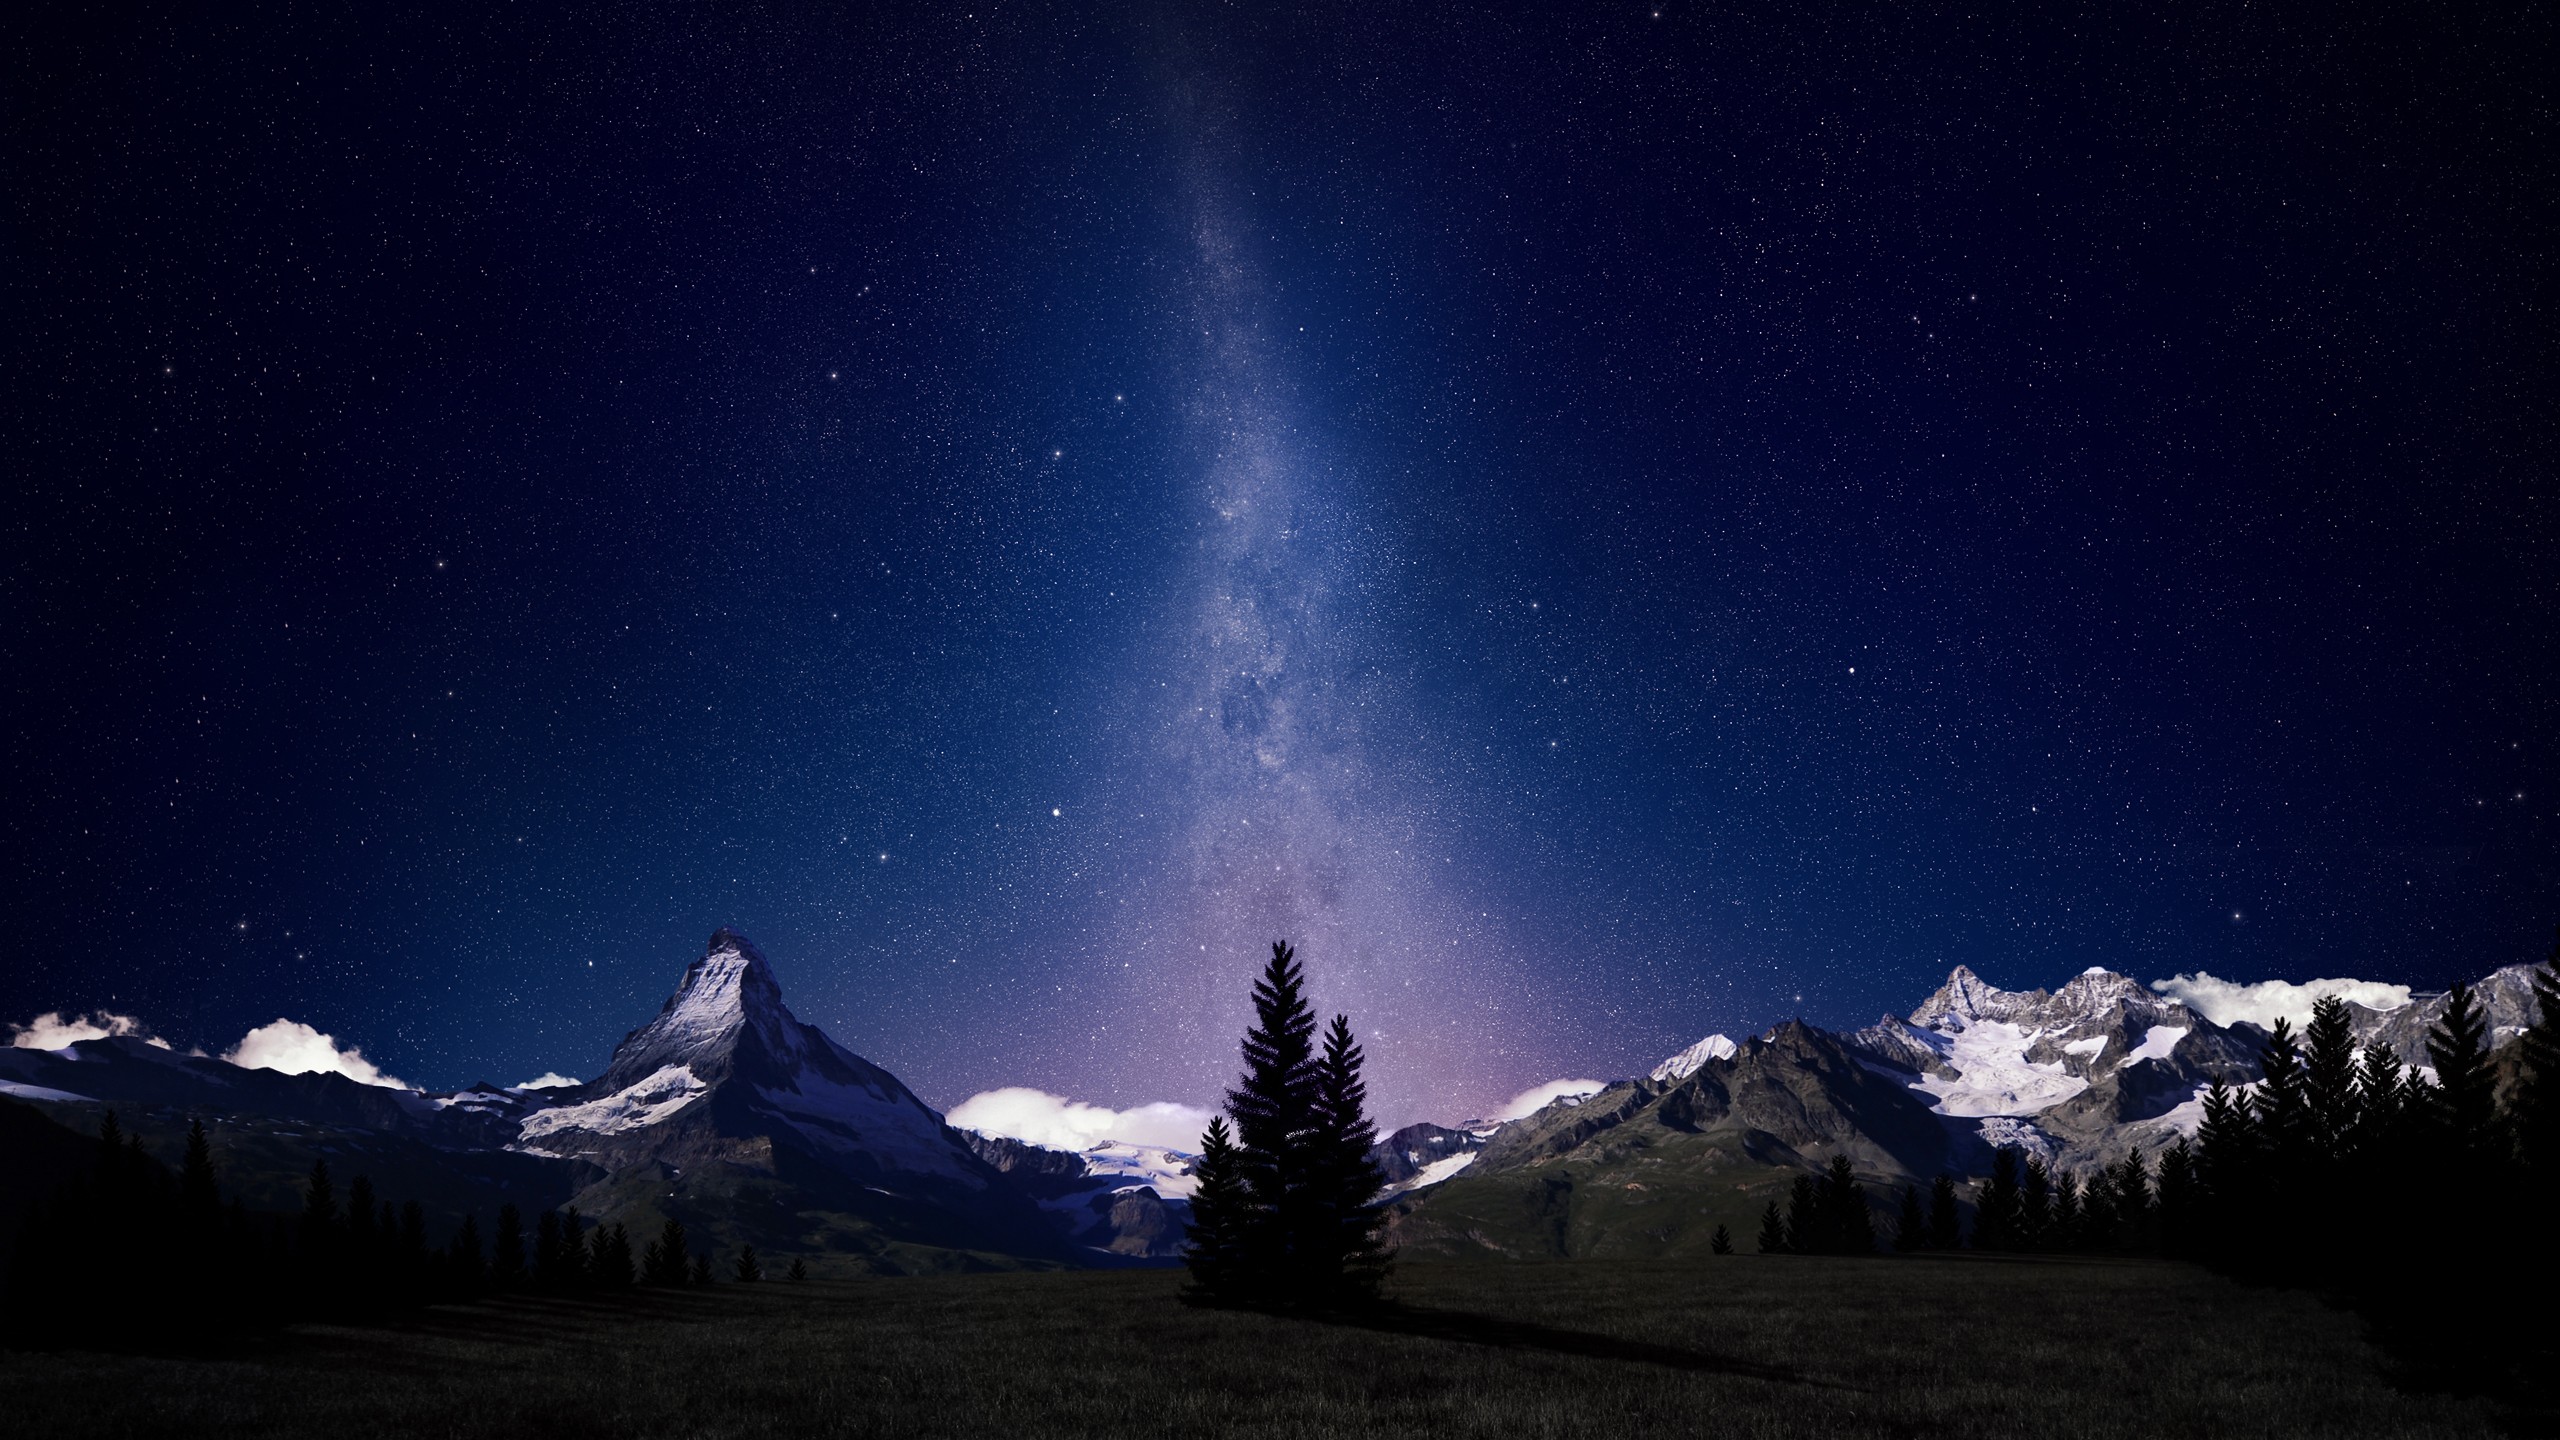 General 2560x1440 sky mountains stars Swiss Alps starry night outdoors nature landscape Matterhorn